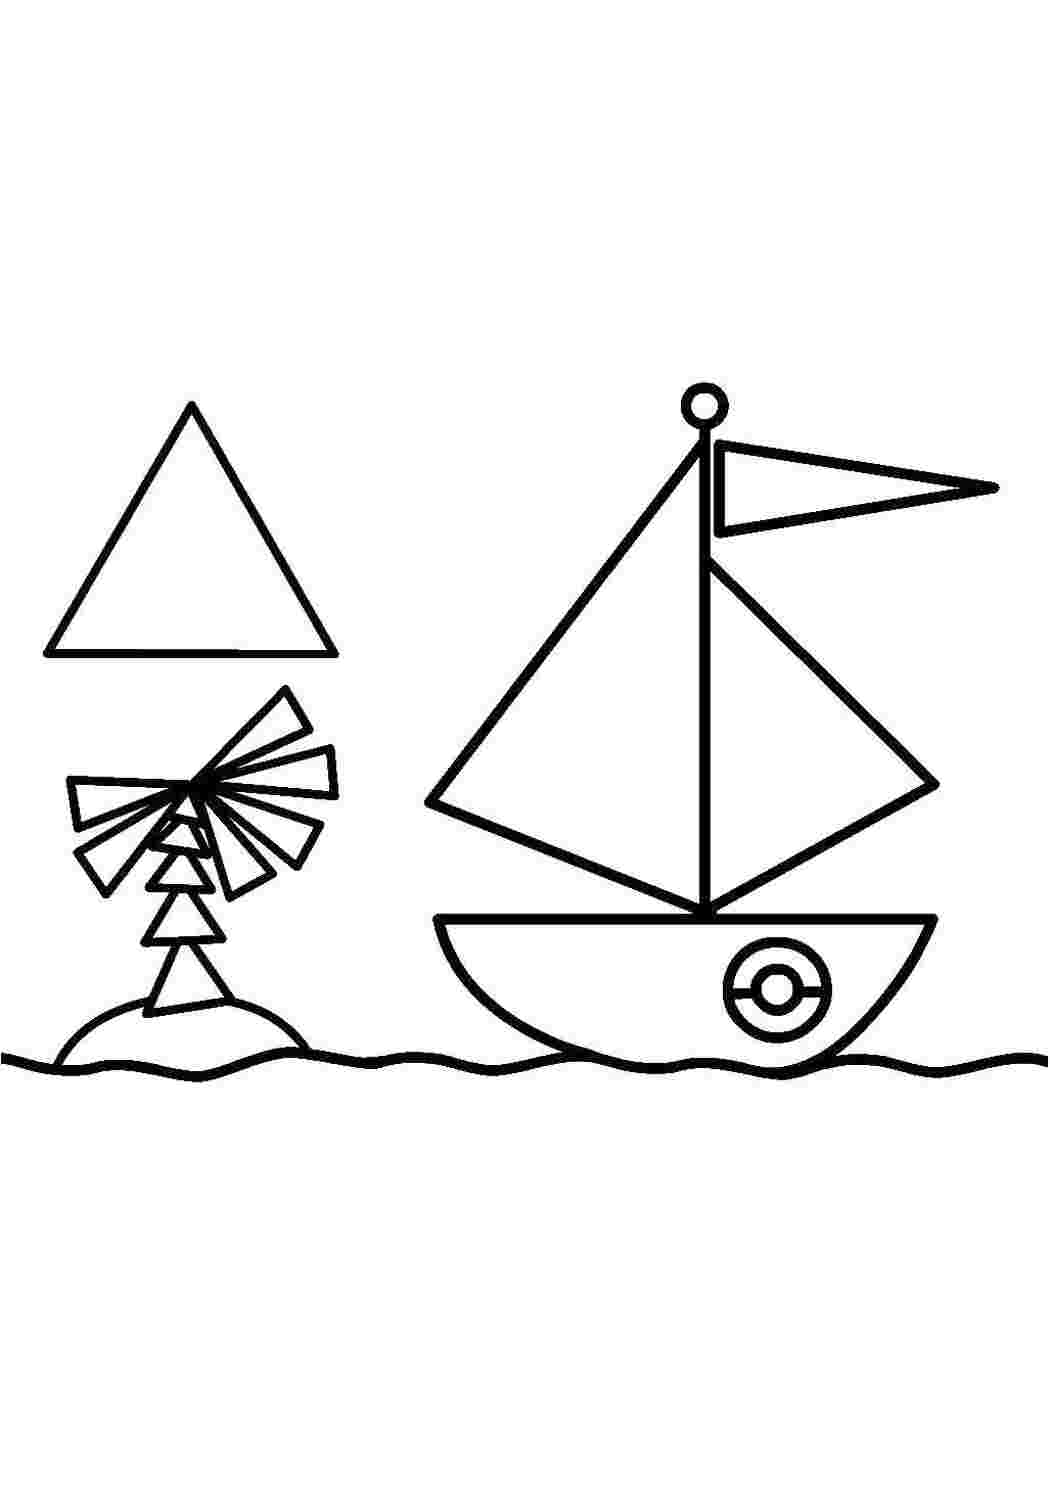 Раскраска фигура распечатать. Кораблик раскраска для детей. Геометрические фигуры раскраска для малышей. Кораблик из геометрических фигур для дошкольников. Аппликация кораблик из геометрических фигур.